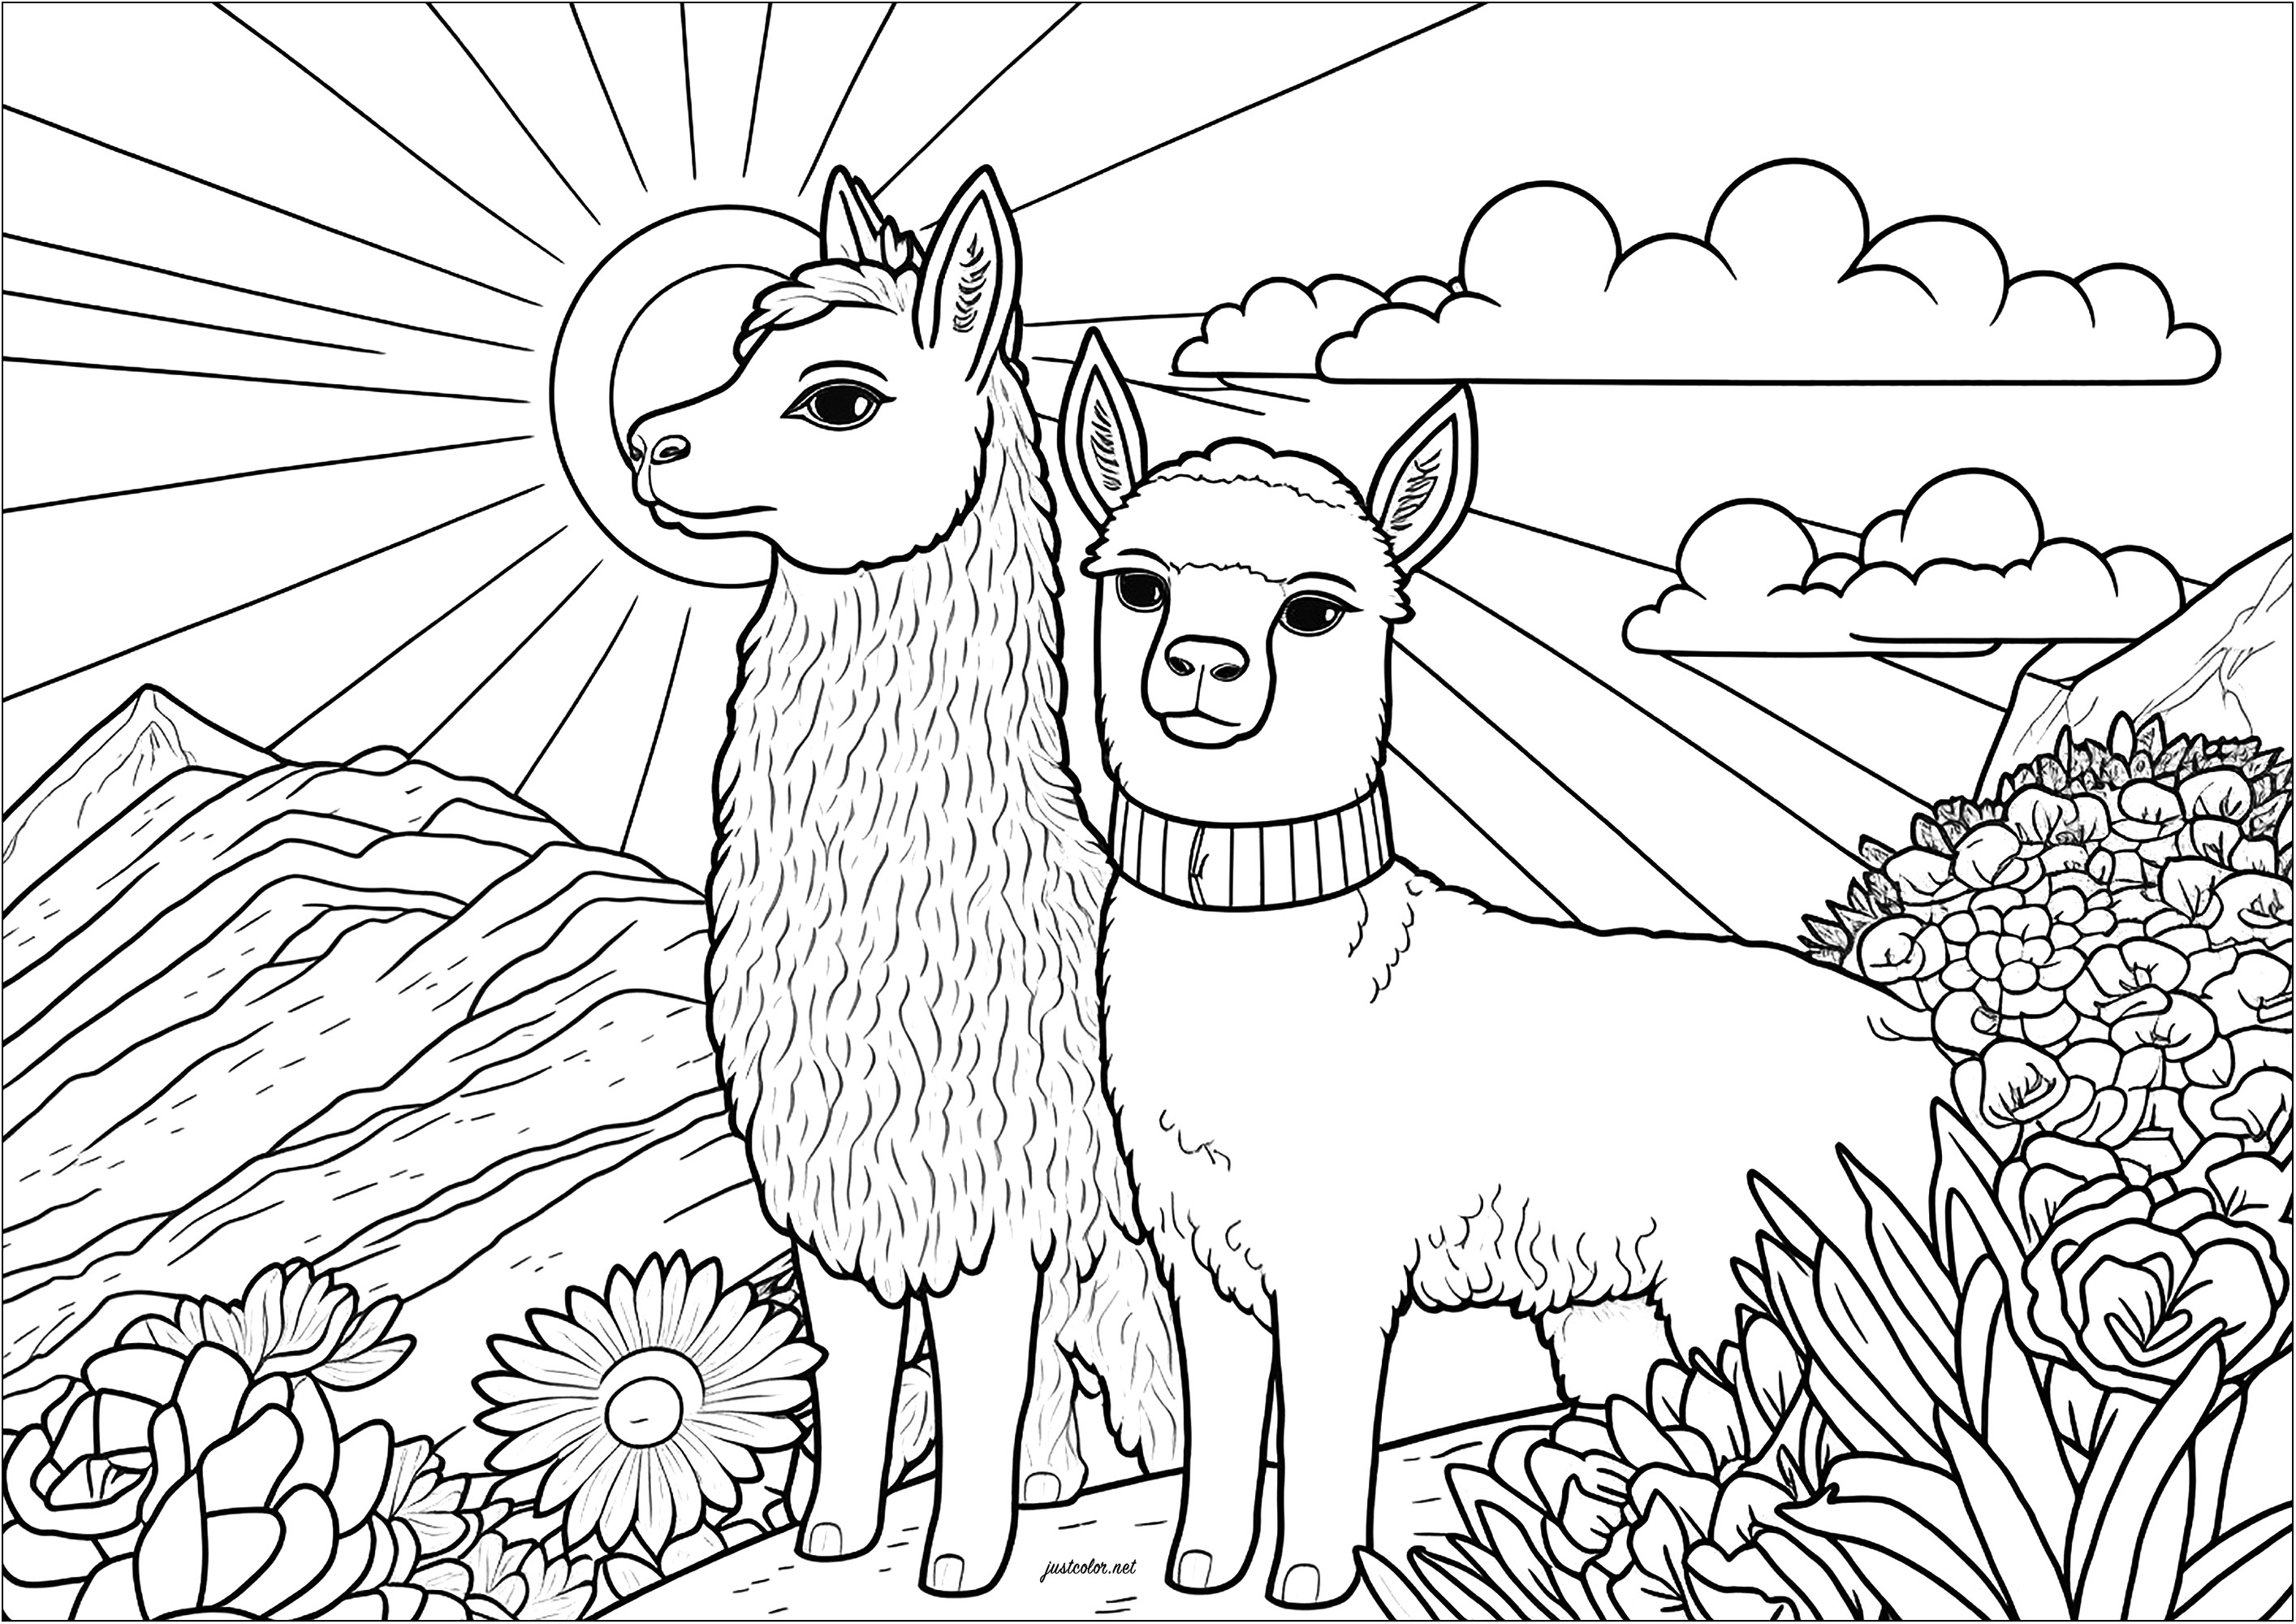 Coloriage de deux lamas sérieux. Dans ce coloriage, on voit deux lamas sérieux, debout côte à côte. Ils semblent se tenir droit, attentifs et calmes. On peut imaginer qu'ils sont en train de regarder le paysage autour d'eux, et qu'ils se sentent bien à l'aise dans leur environnement, Artiste : IAsabelle